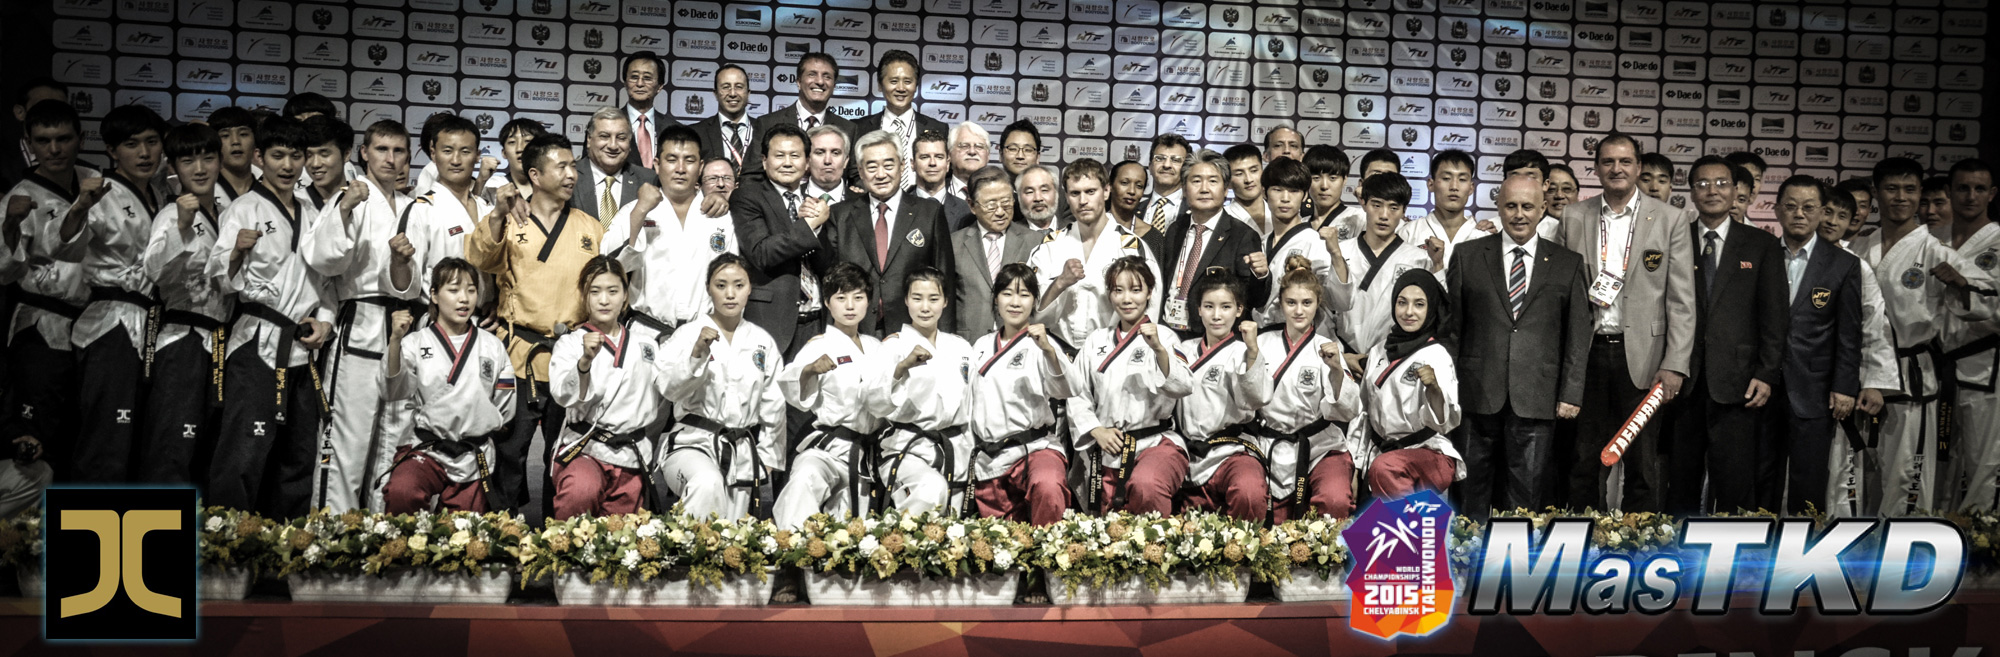 14_20150512_Taekwondo-Mundial_JC-Seleccion_D1